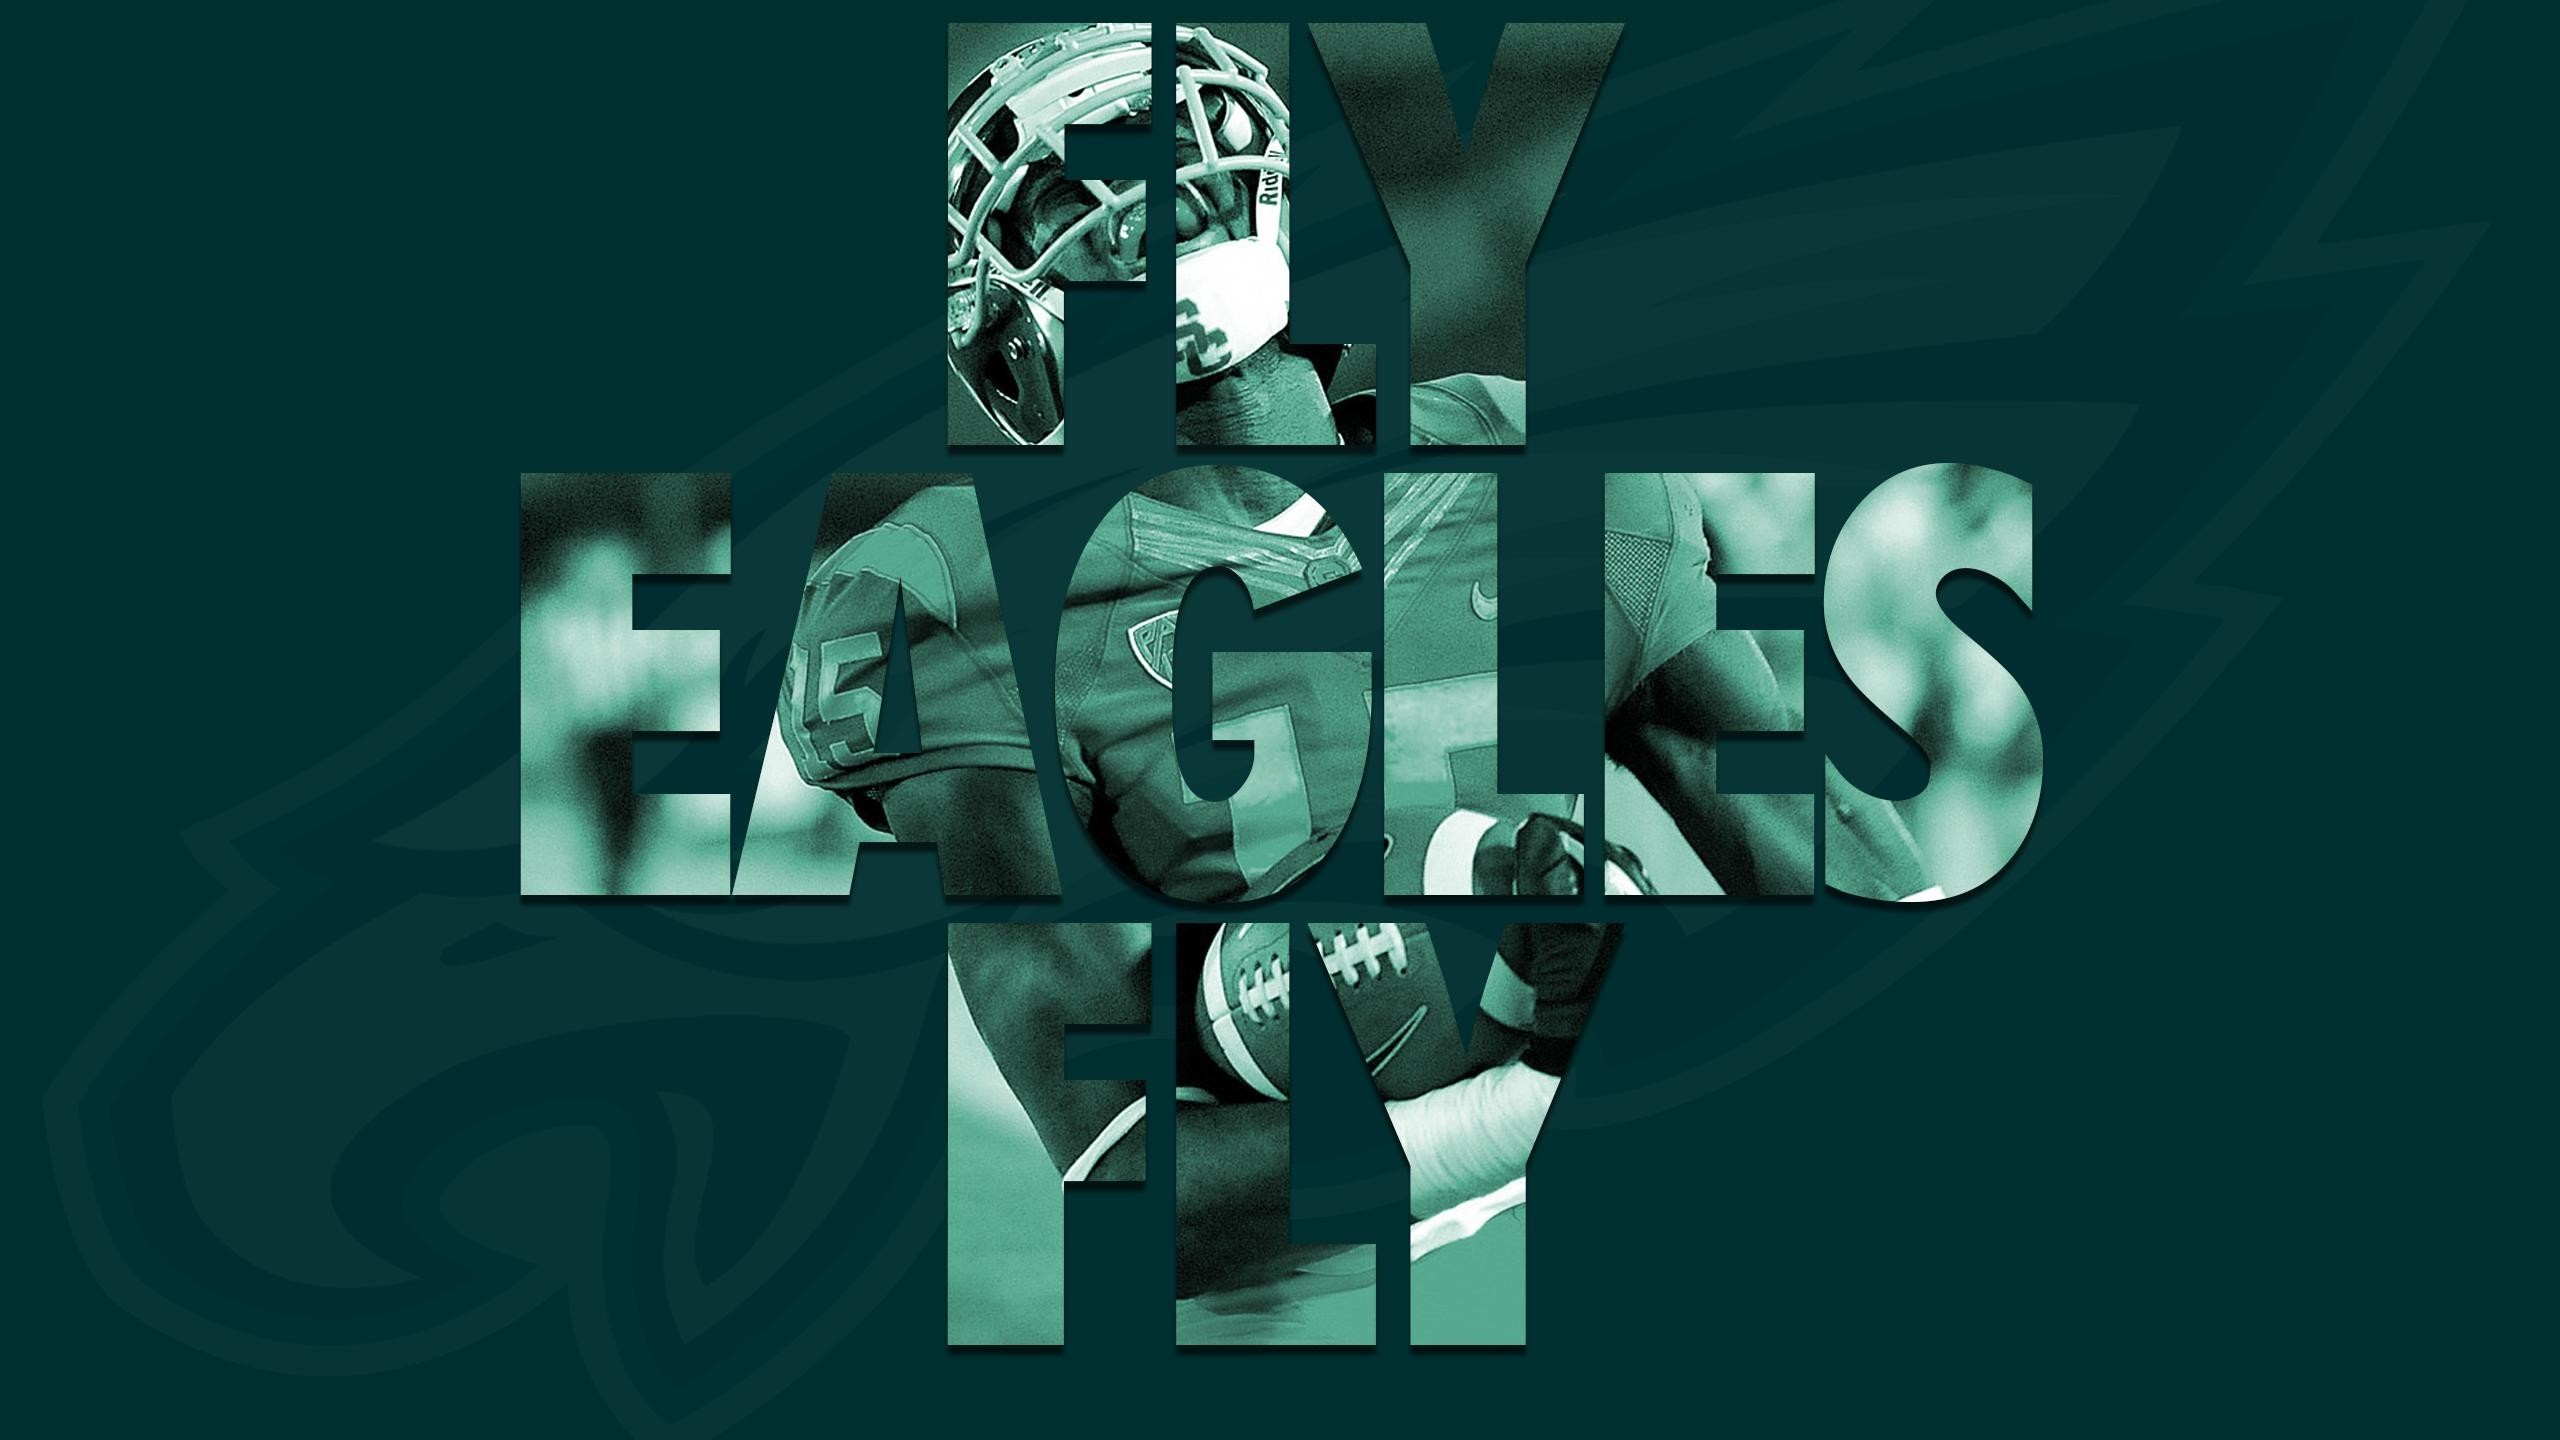 2560x1440, Philadelphia Eagles Wallpapers - Philadelphia Eagles 2018 Season - HD Wallpaper 